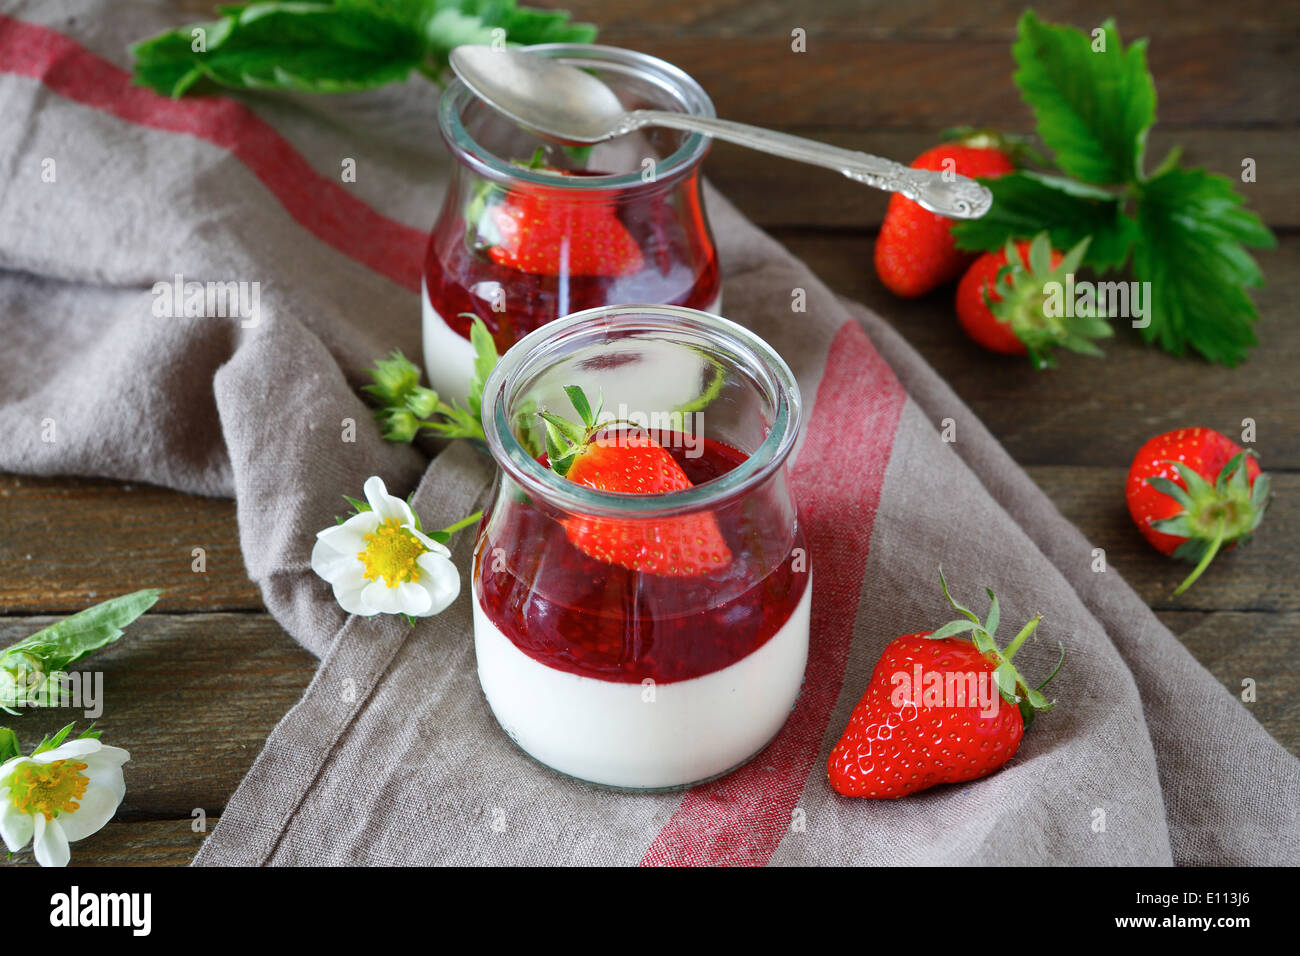 homemade yogurt with strawberries Stock Photo